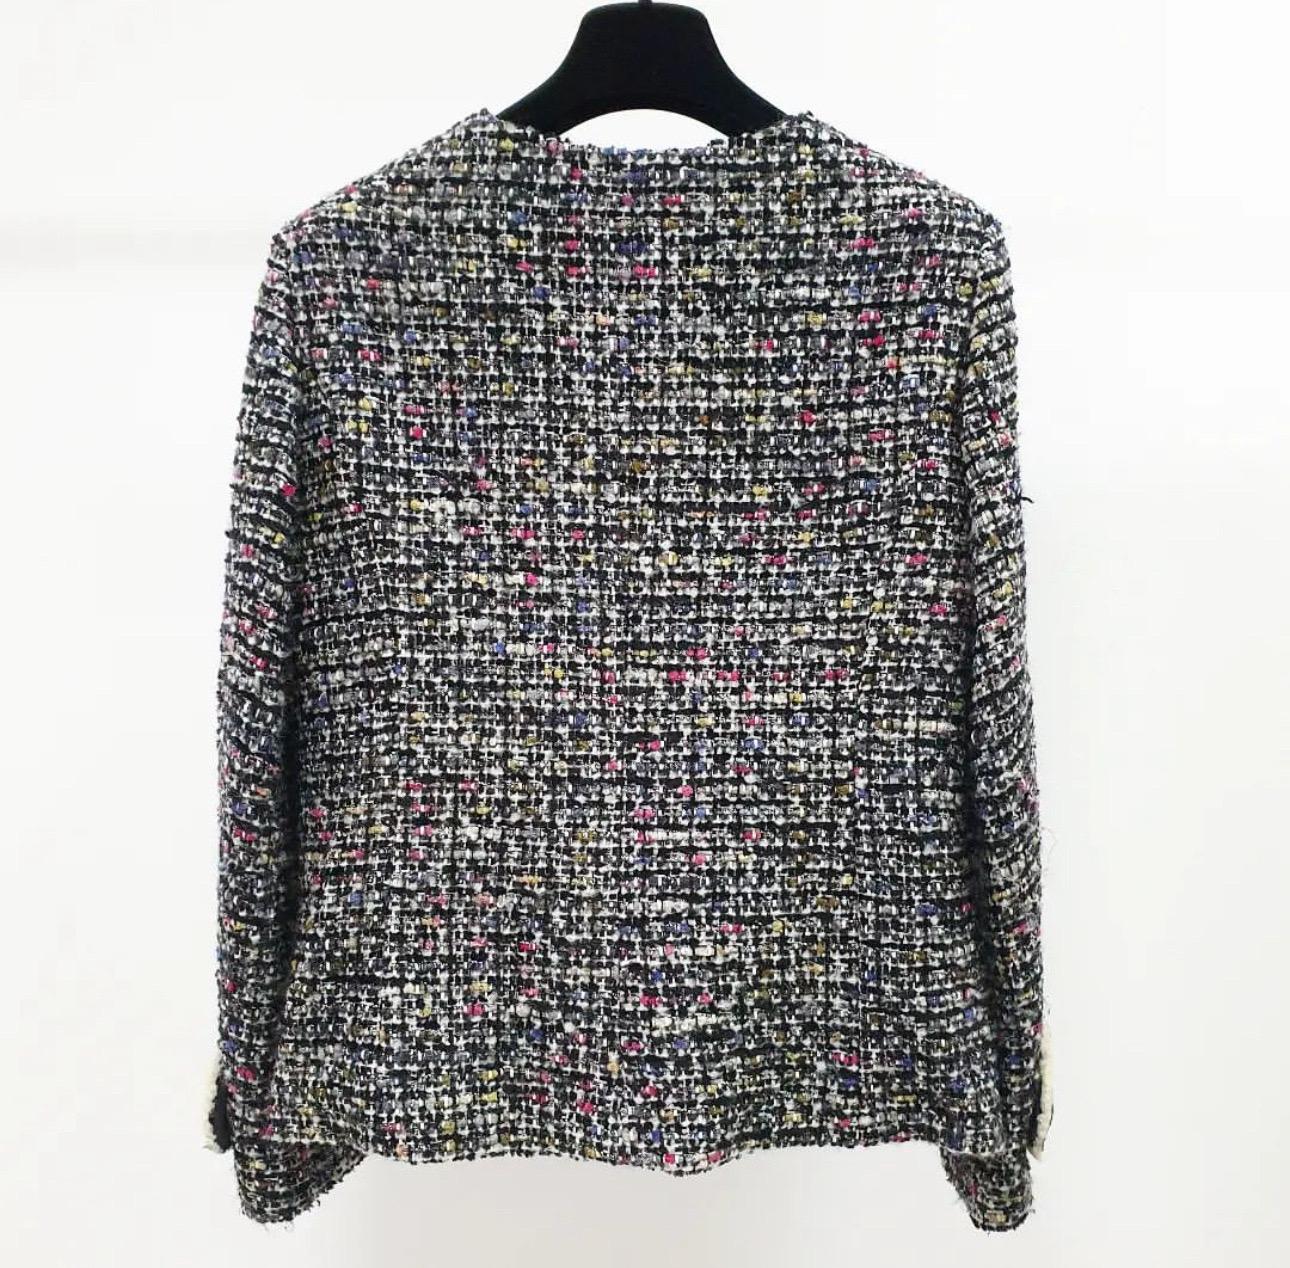 Voici une très belle veste Chanel en tweed x shearling avec la marque CC turnlock.

La taille est de 38

La couleur élégante du tweed est partiellement composée de shearling, ce qui lui confère une sensation très luxueuse.

La breloque 